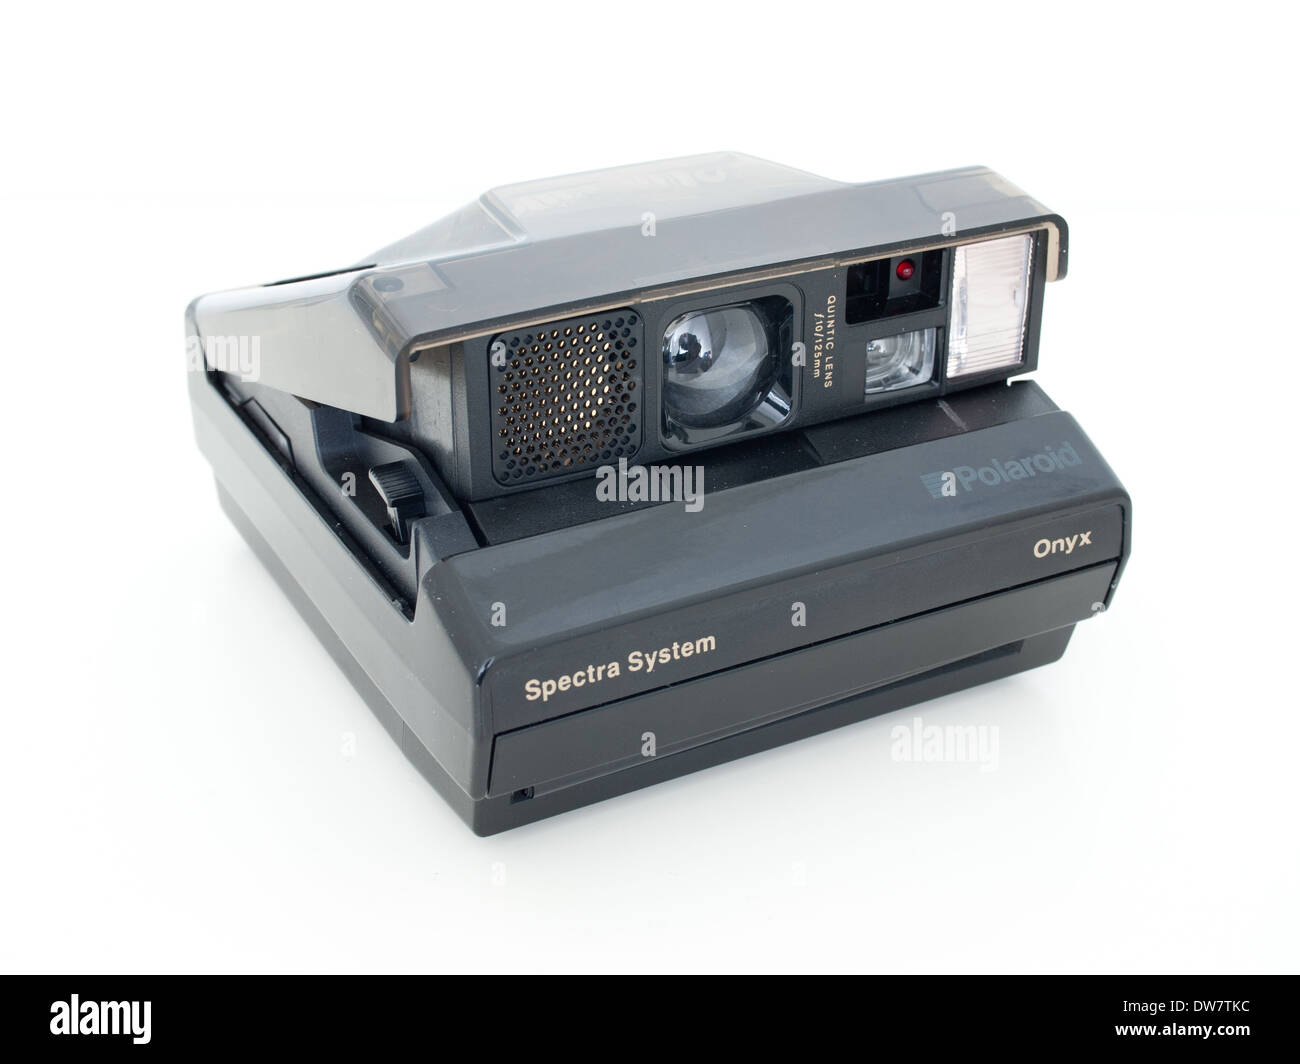 Un appareil photo Polaroid Spectra Onyx, avec des corps gris semi-translucides. Banque D'Images